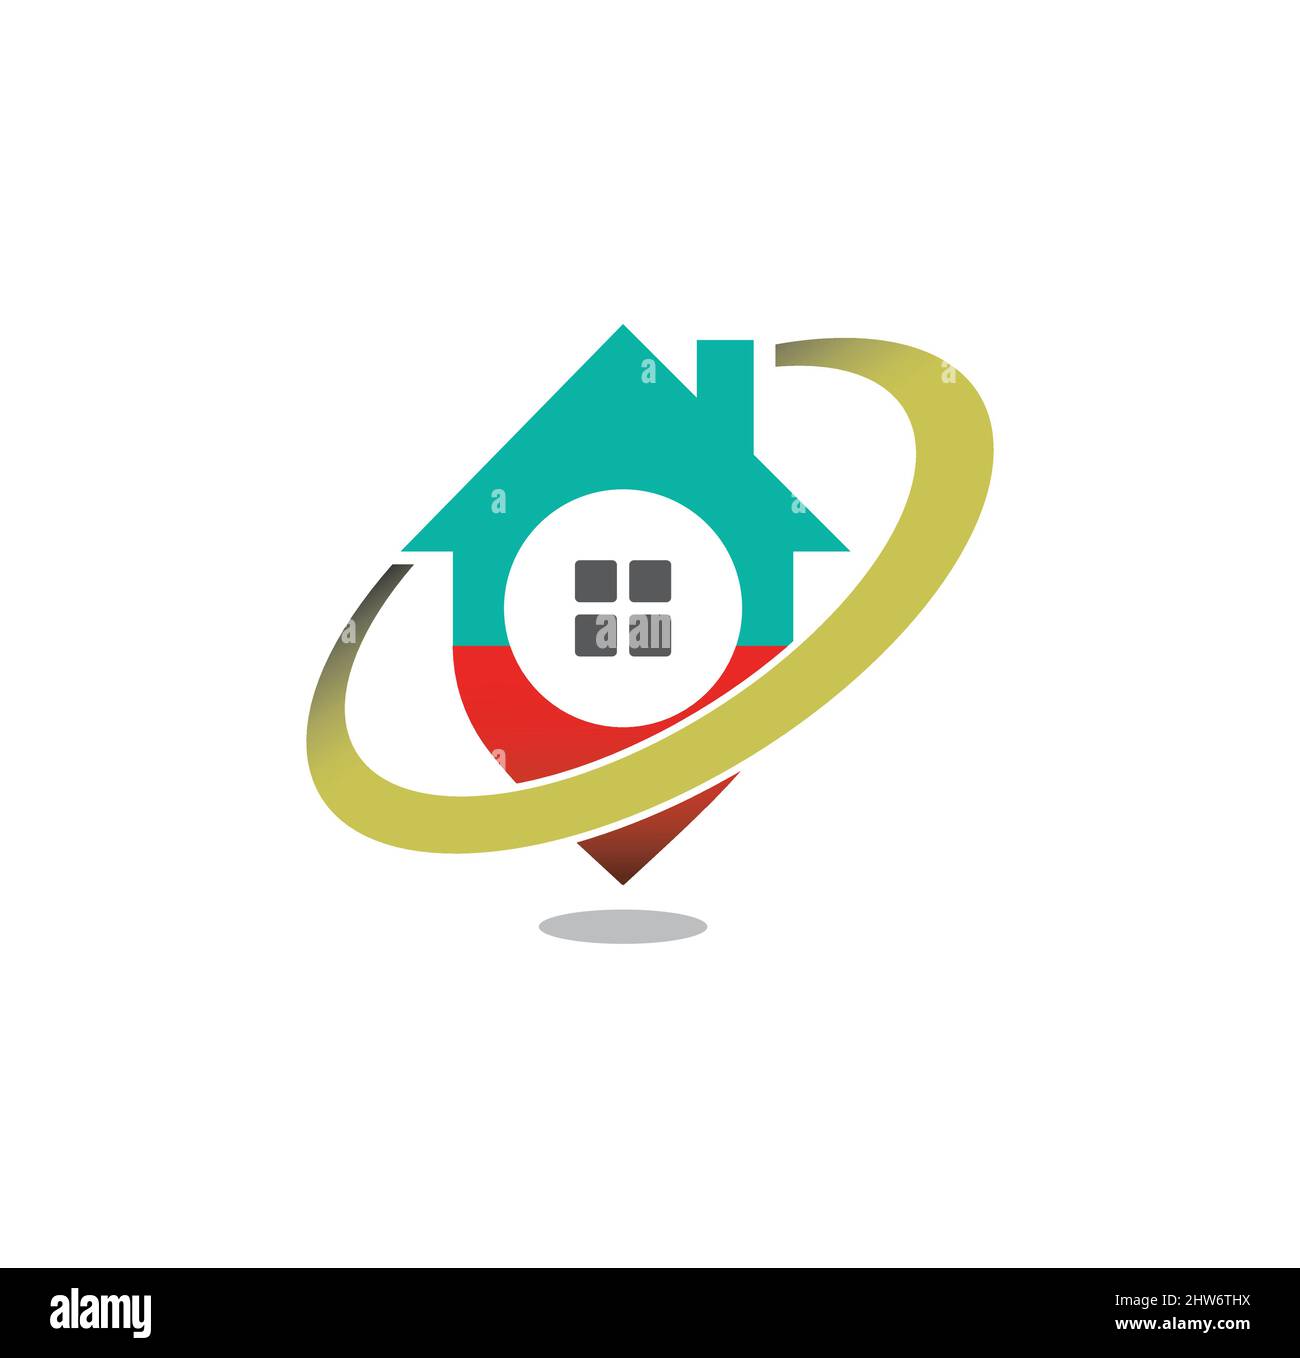 Pin house logo design Illustration vettoriale eps format , adatto per le vostre esigenze di design, logo, illustrazione, animazione, ecc. Illustrazione Vettoriale